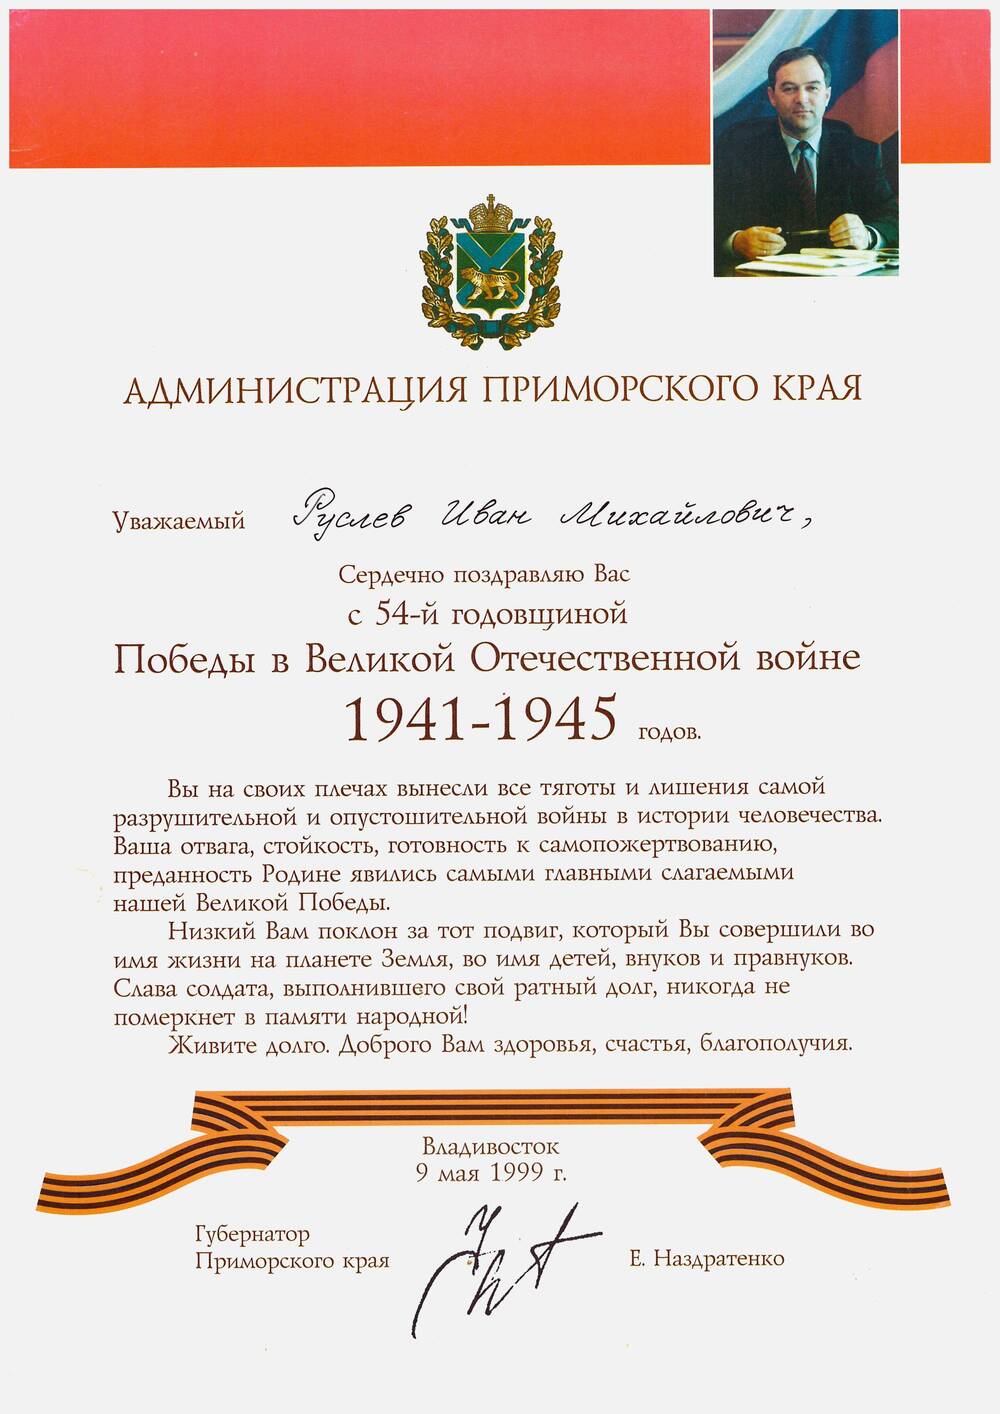 Поздравление Русяеву И. М. с 54-й годовщиной Победы от Губернатора Приморского края Наздратенко Е.И.